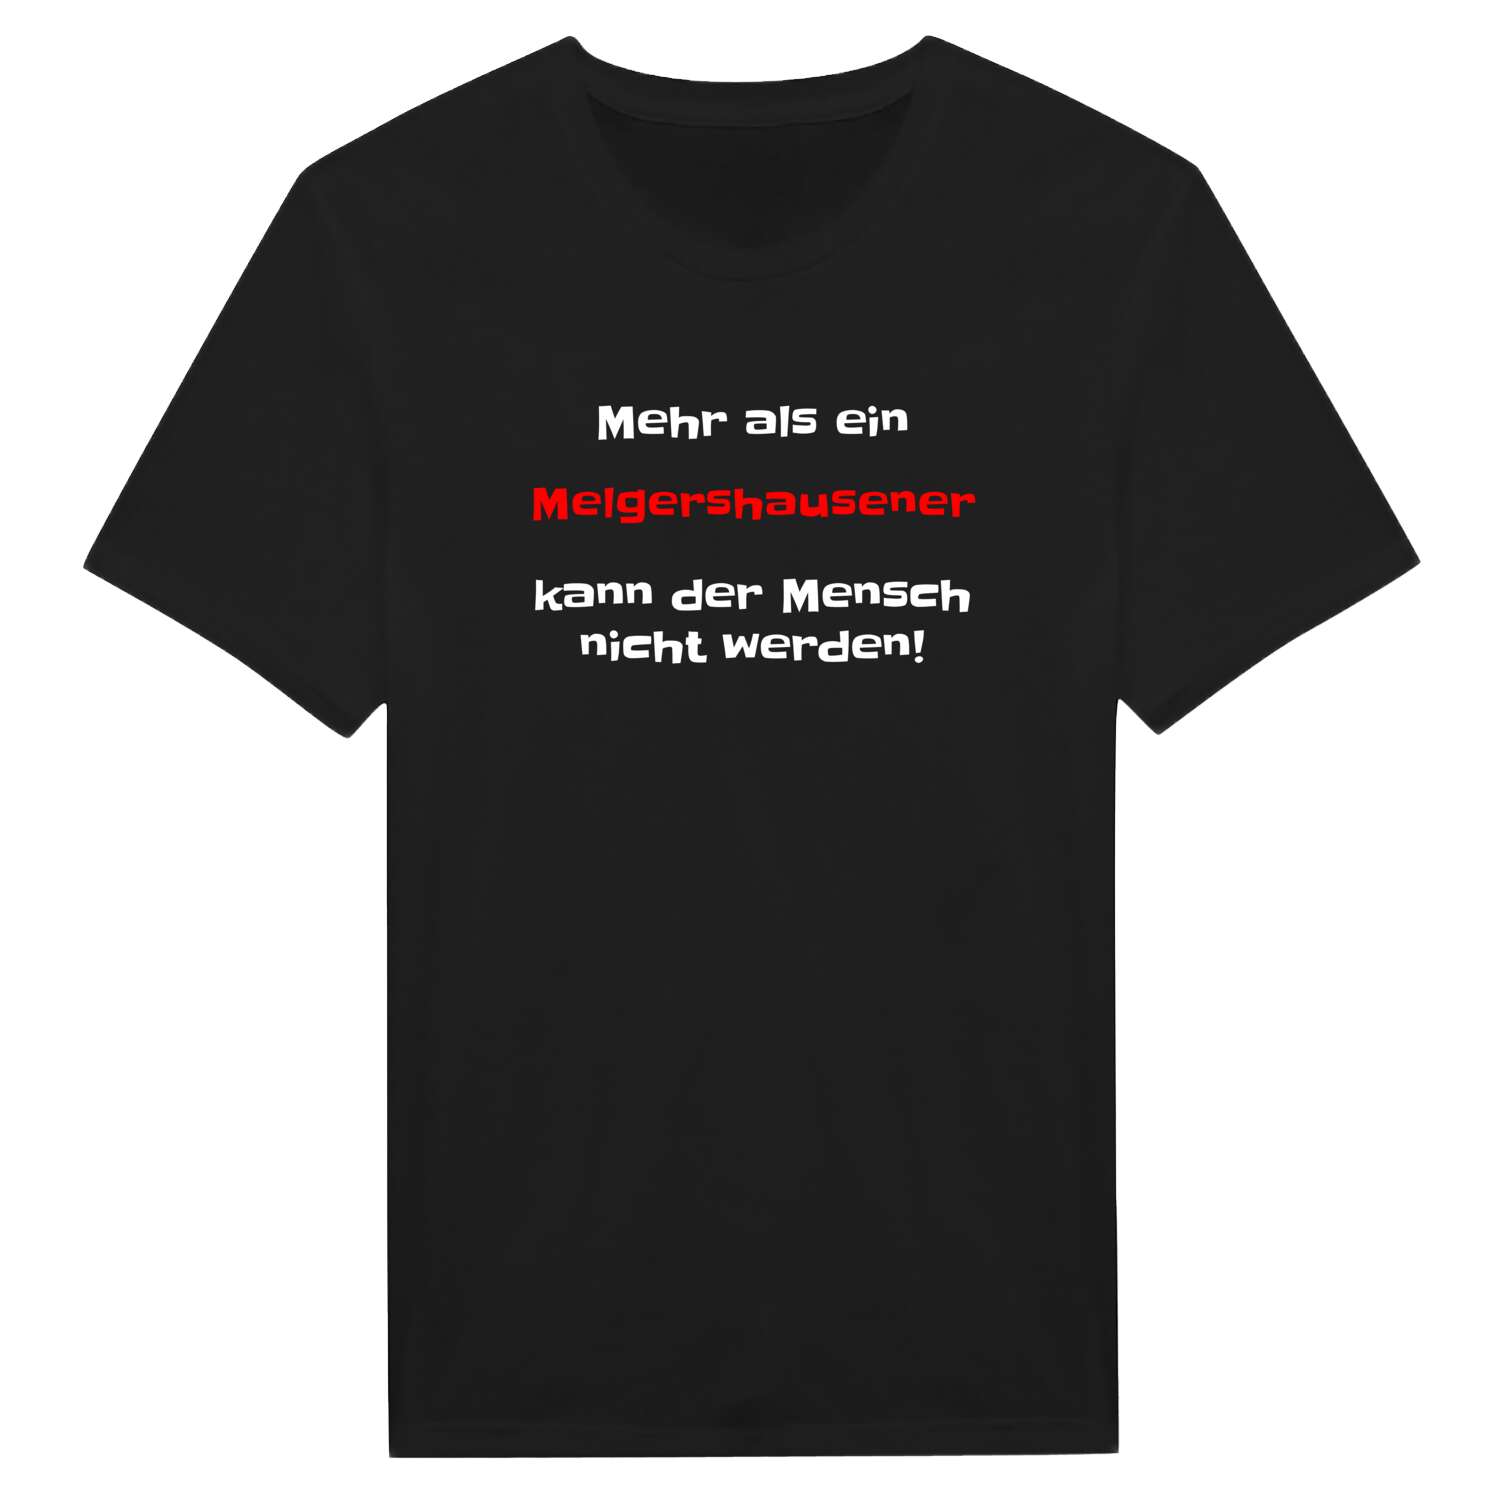 Melgershausen T-Shirt »Mehr als ein«